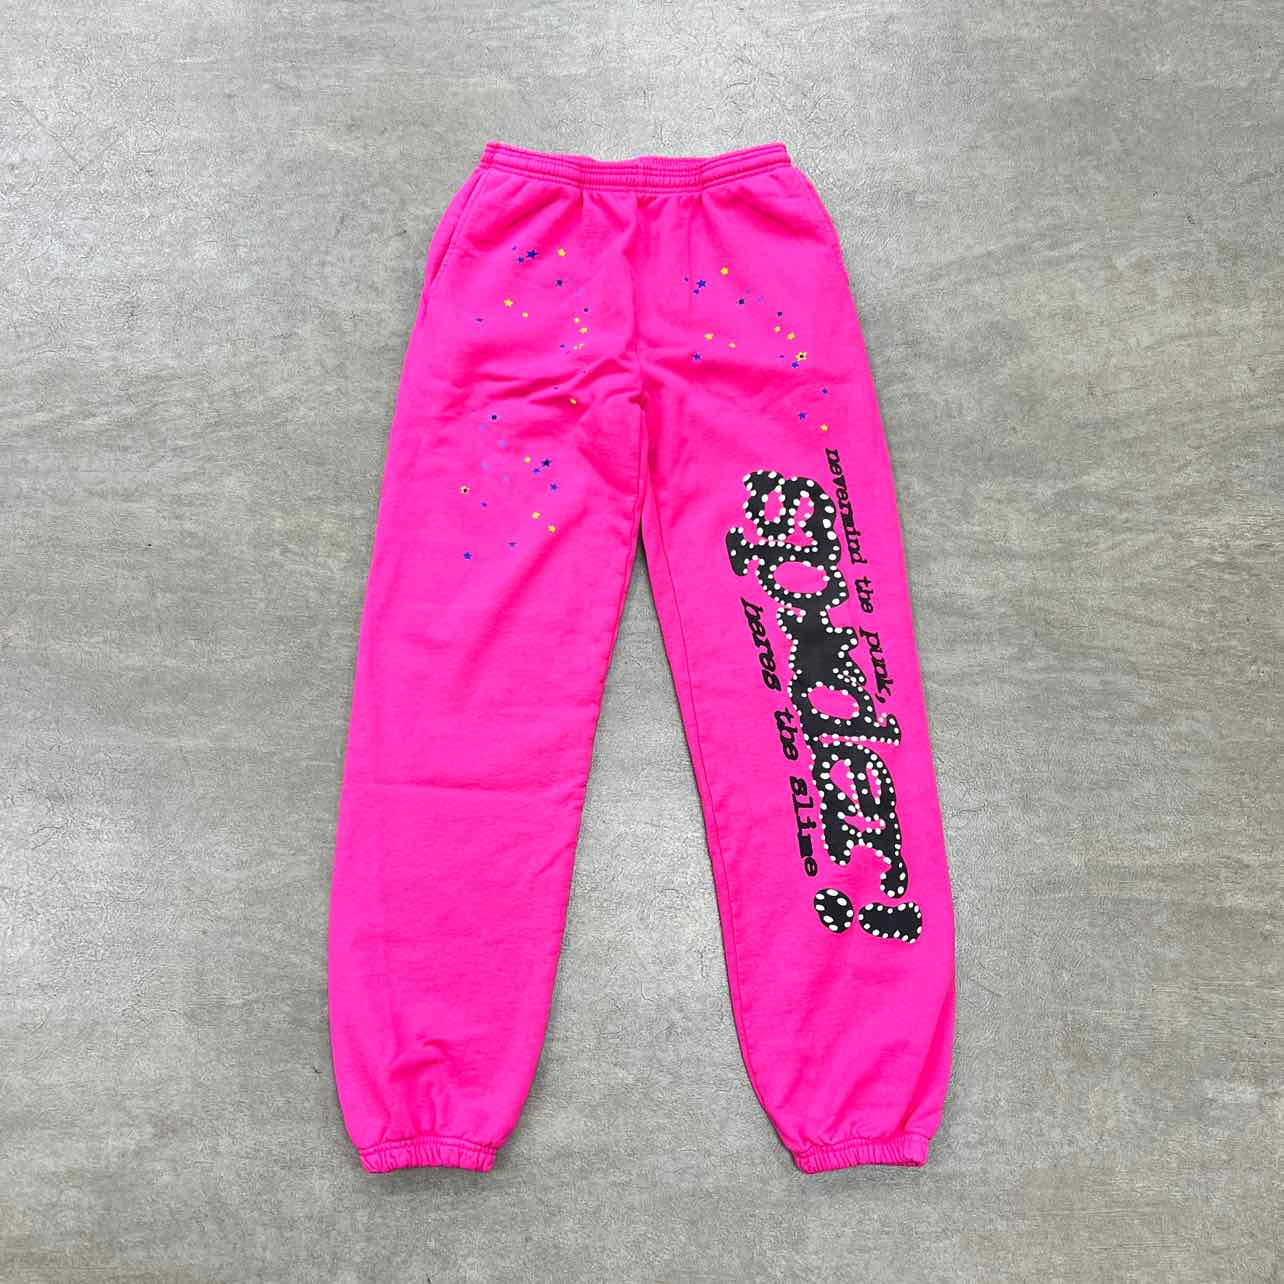 Sp5der Sweatpants "P*NK" Pink New Size L